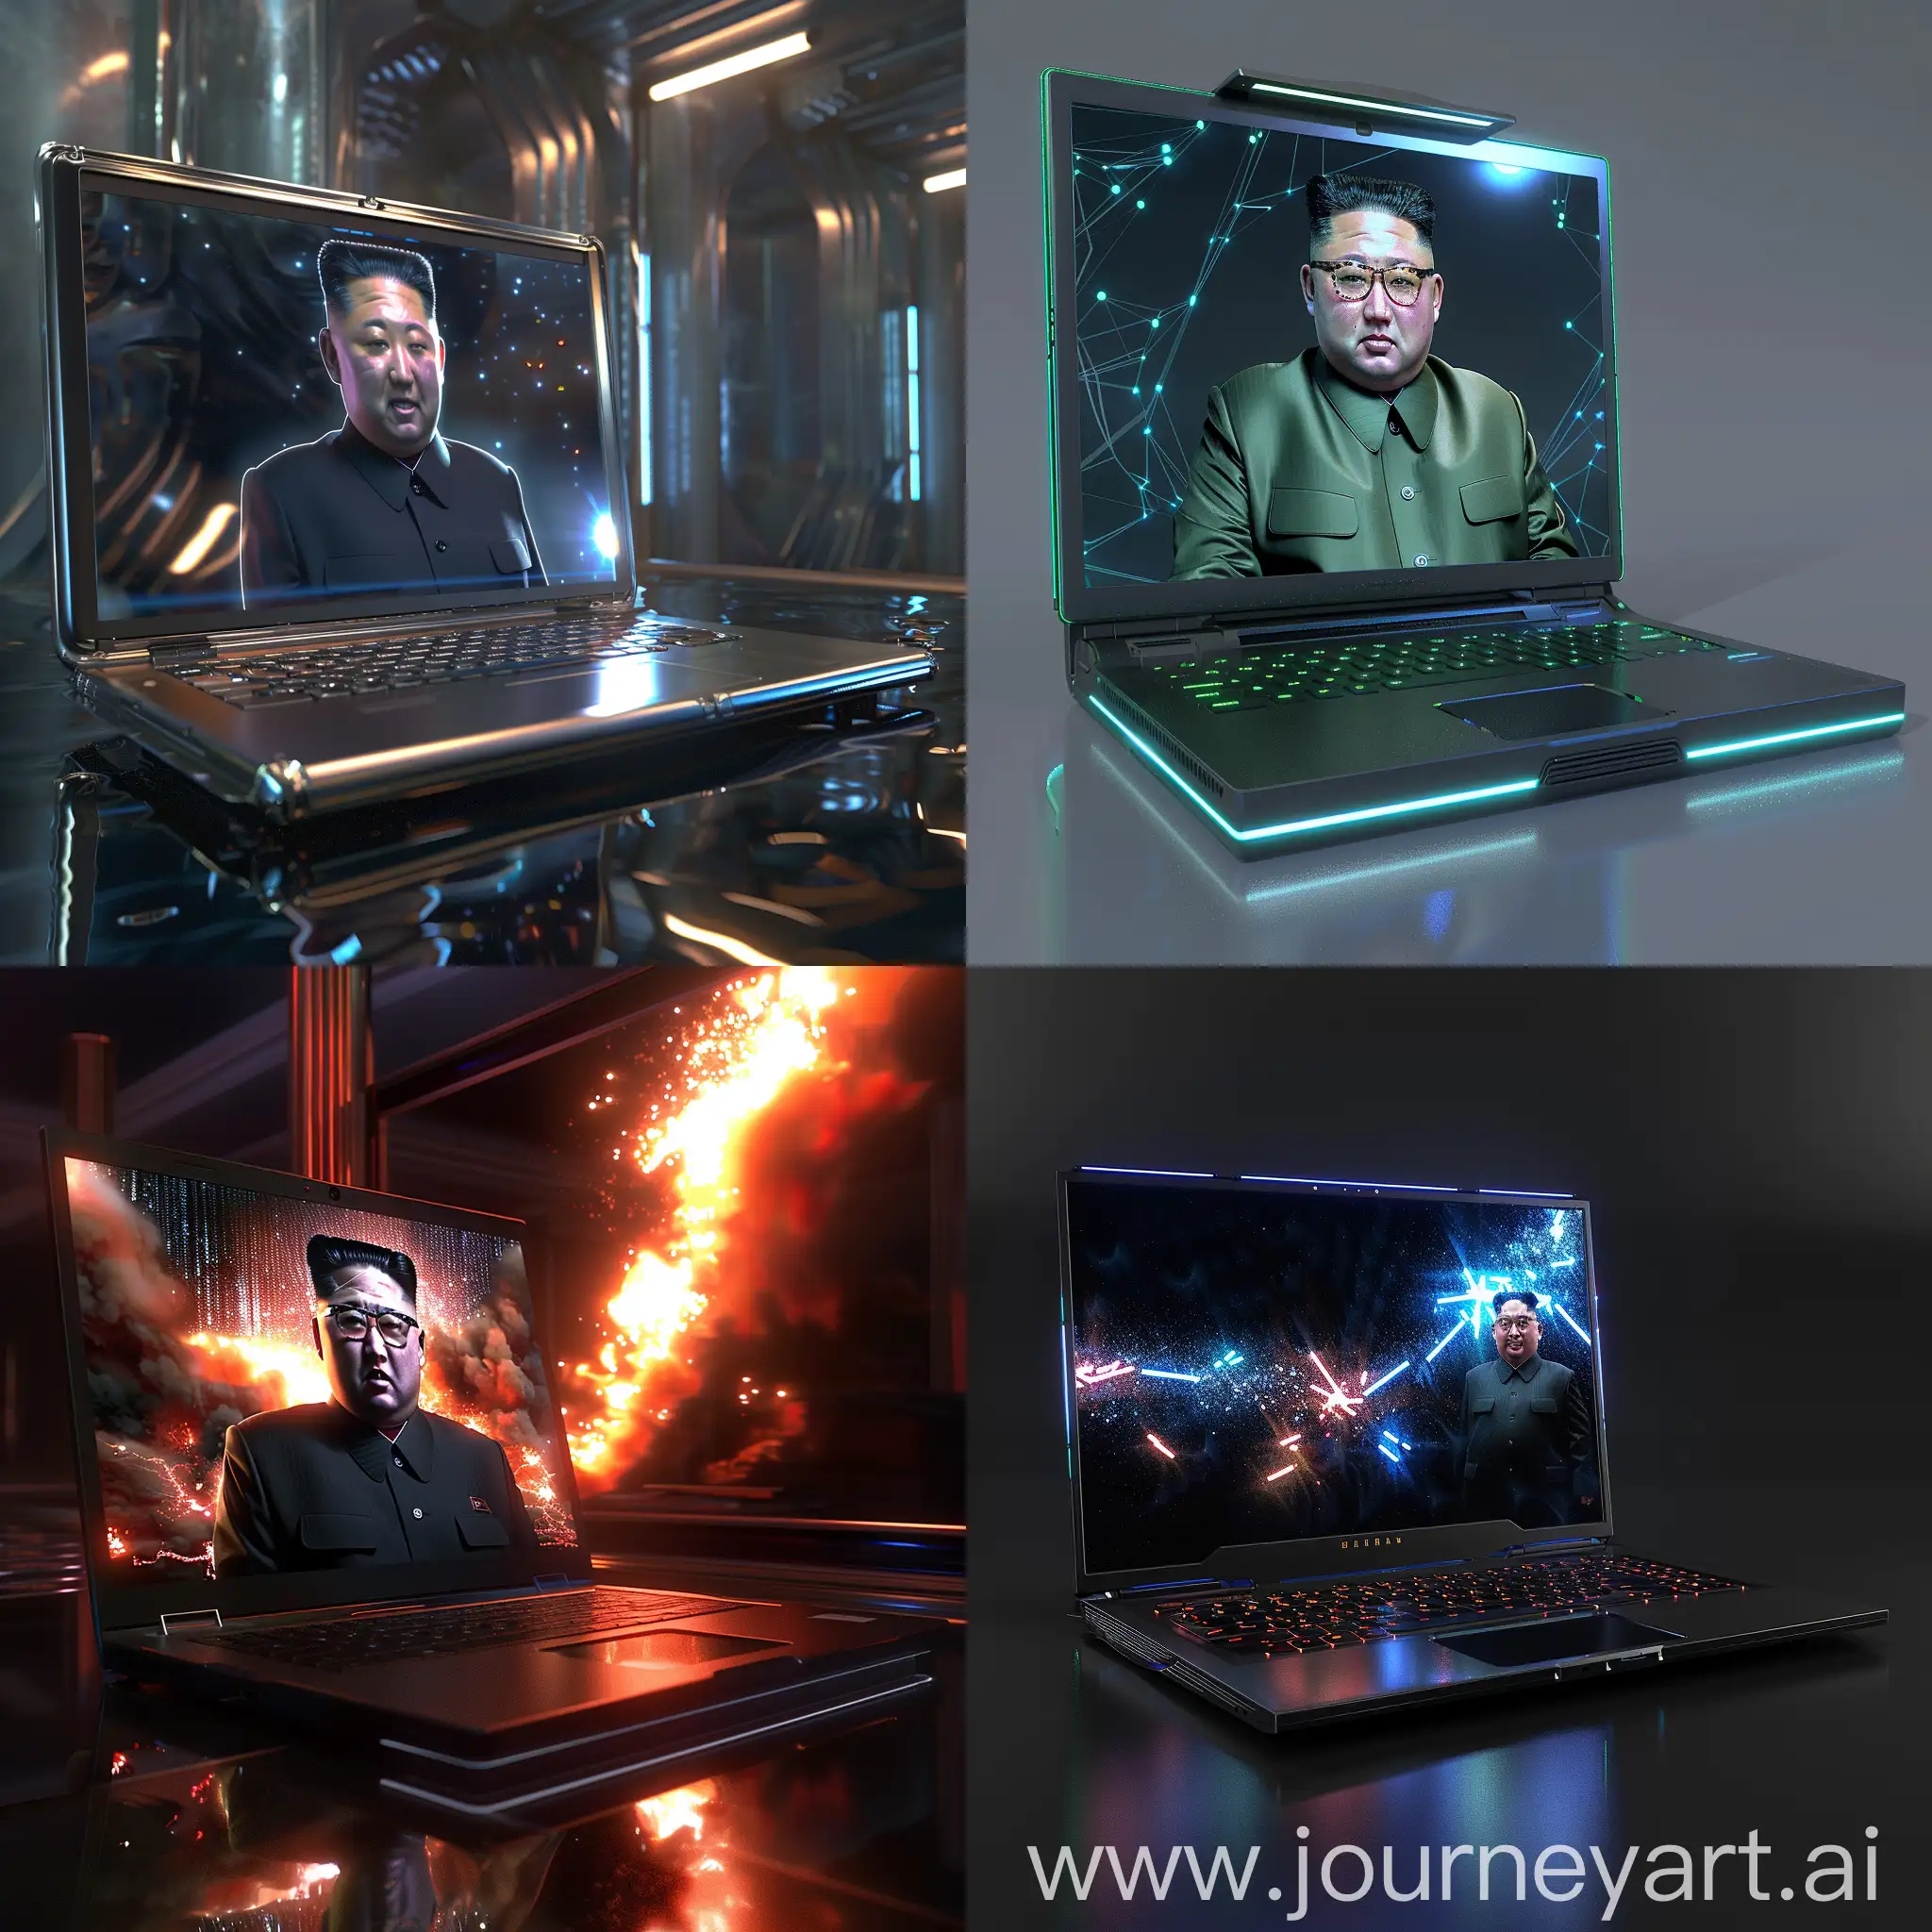 Futuristic-UltraModern-Kim-Jongil-with-Nanotechnology-Laptop